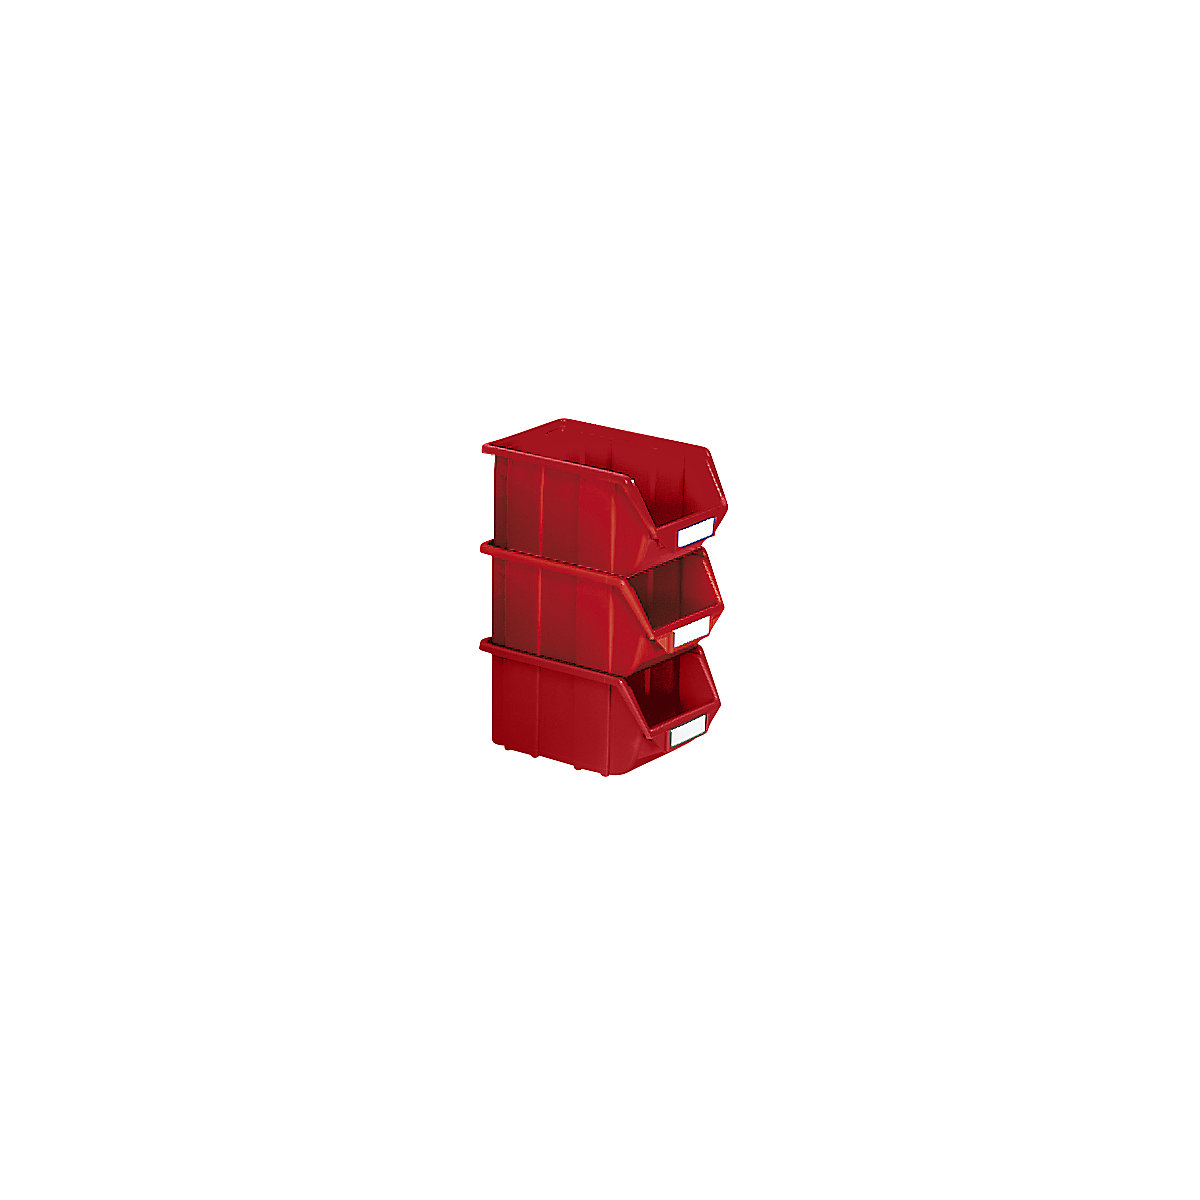 Caixa de armazenagem à vista em polipropileno, CxLxA 125 x 113 x 64 mm, embalagem de 30 unid., vermelho, embalagem com 30 unid.-6